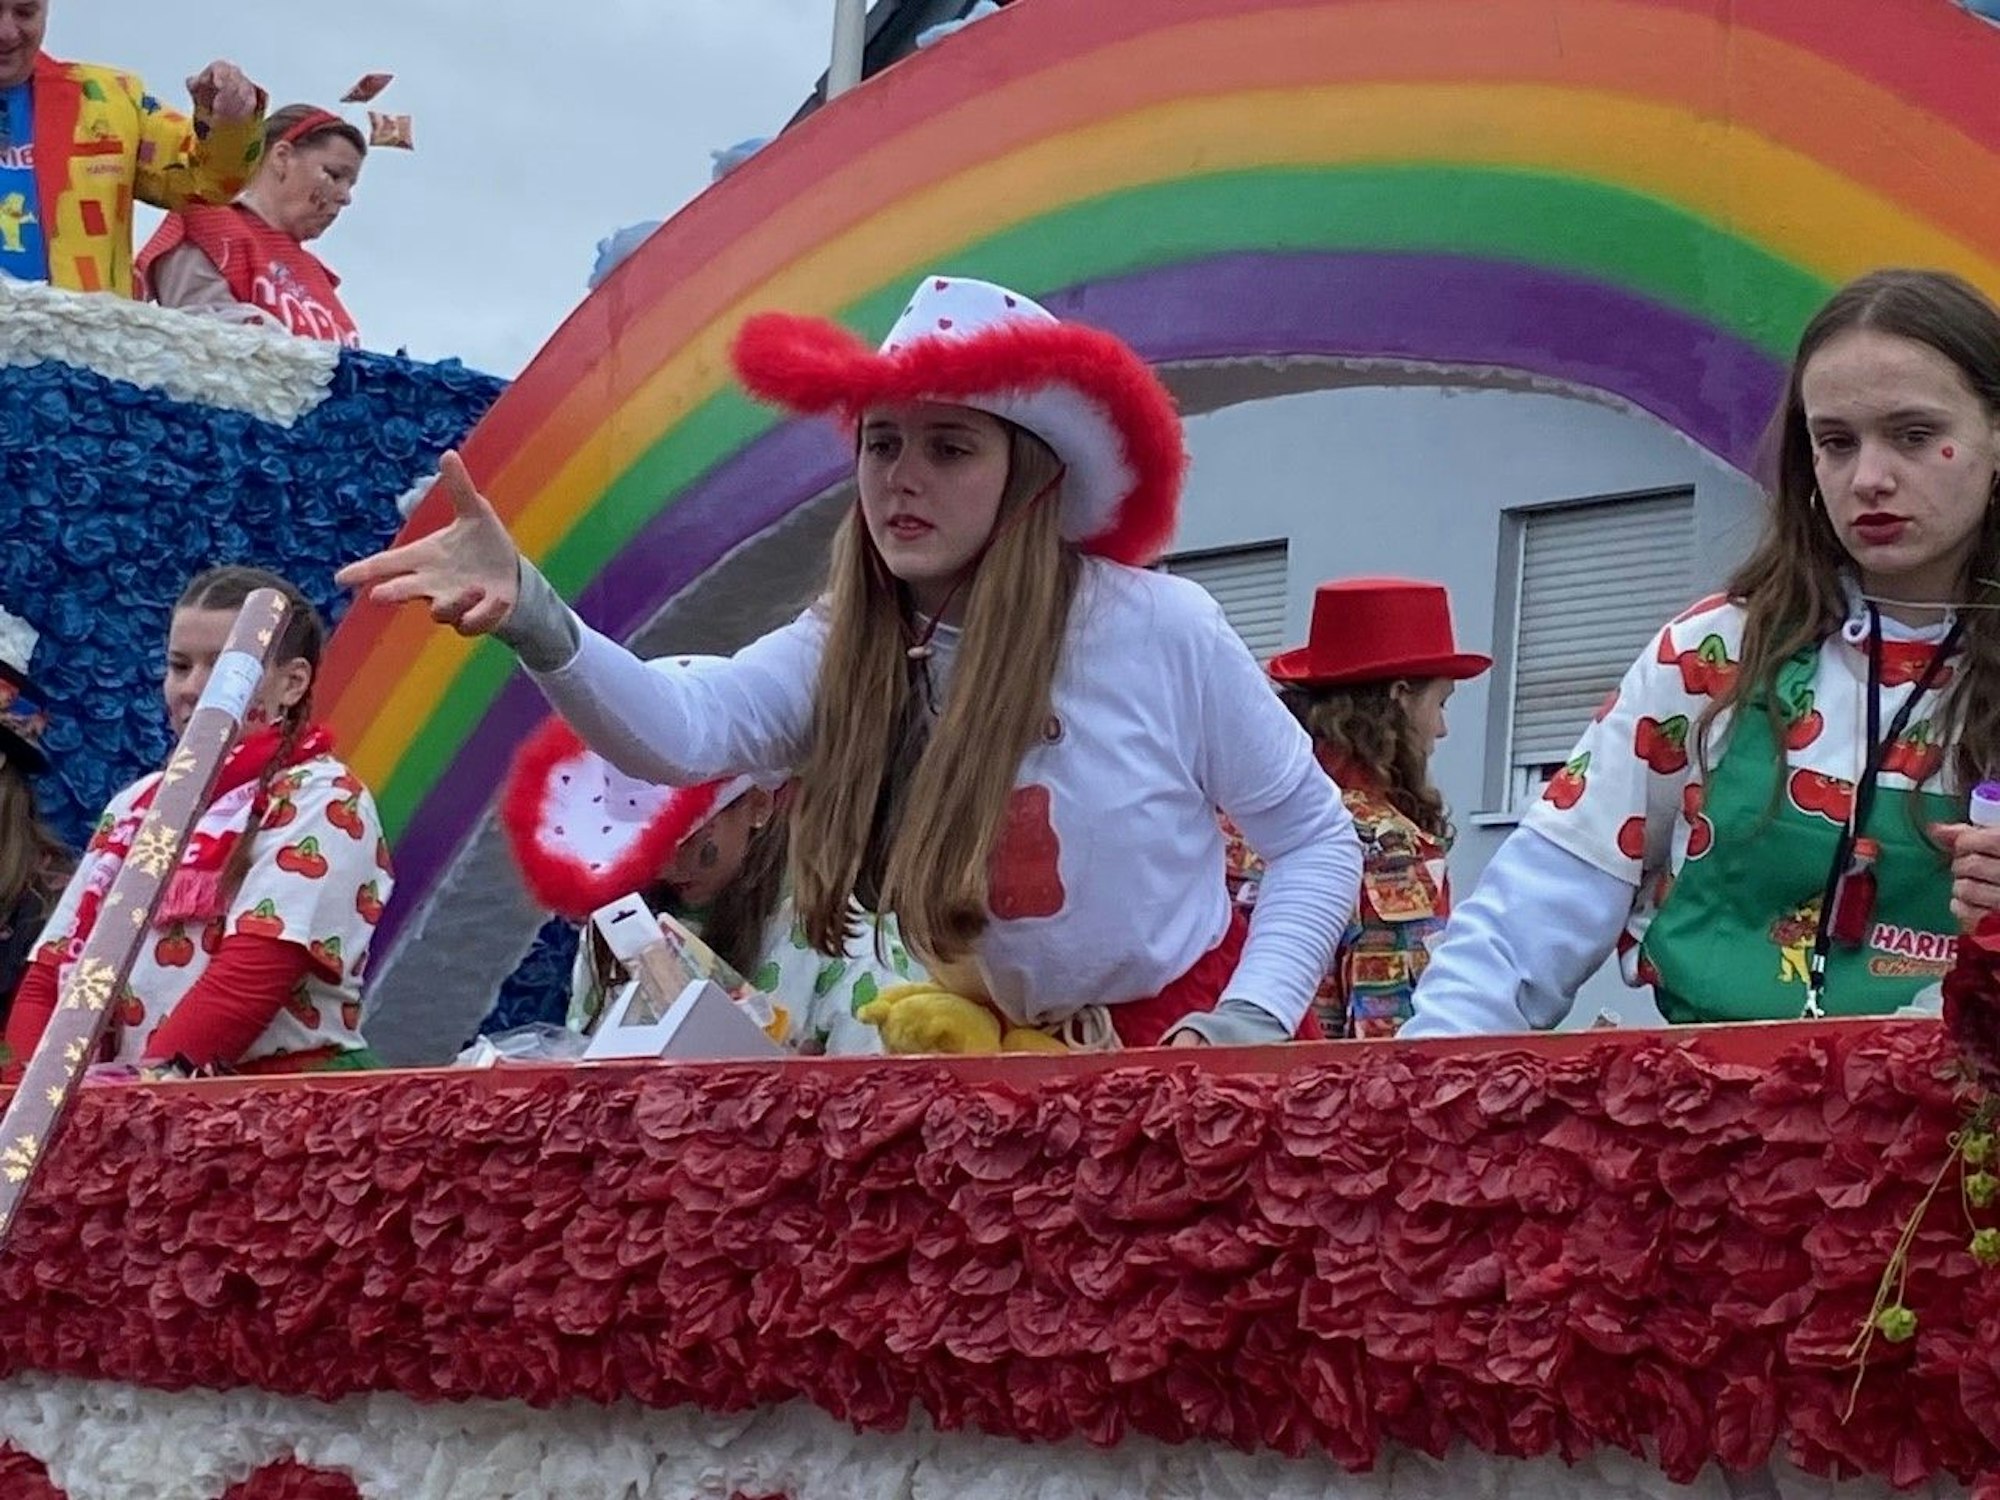 Auf dem Bild sind Mädchen zu sehen, die etwas von einem Karnevalswagen werden.